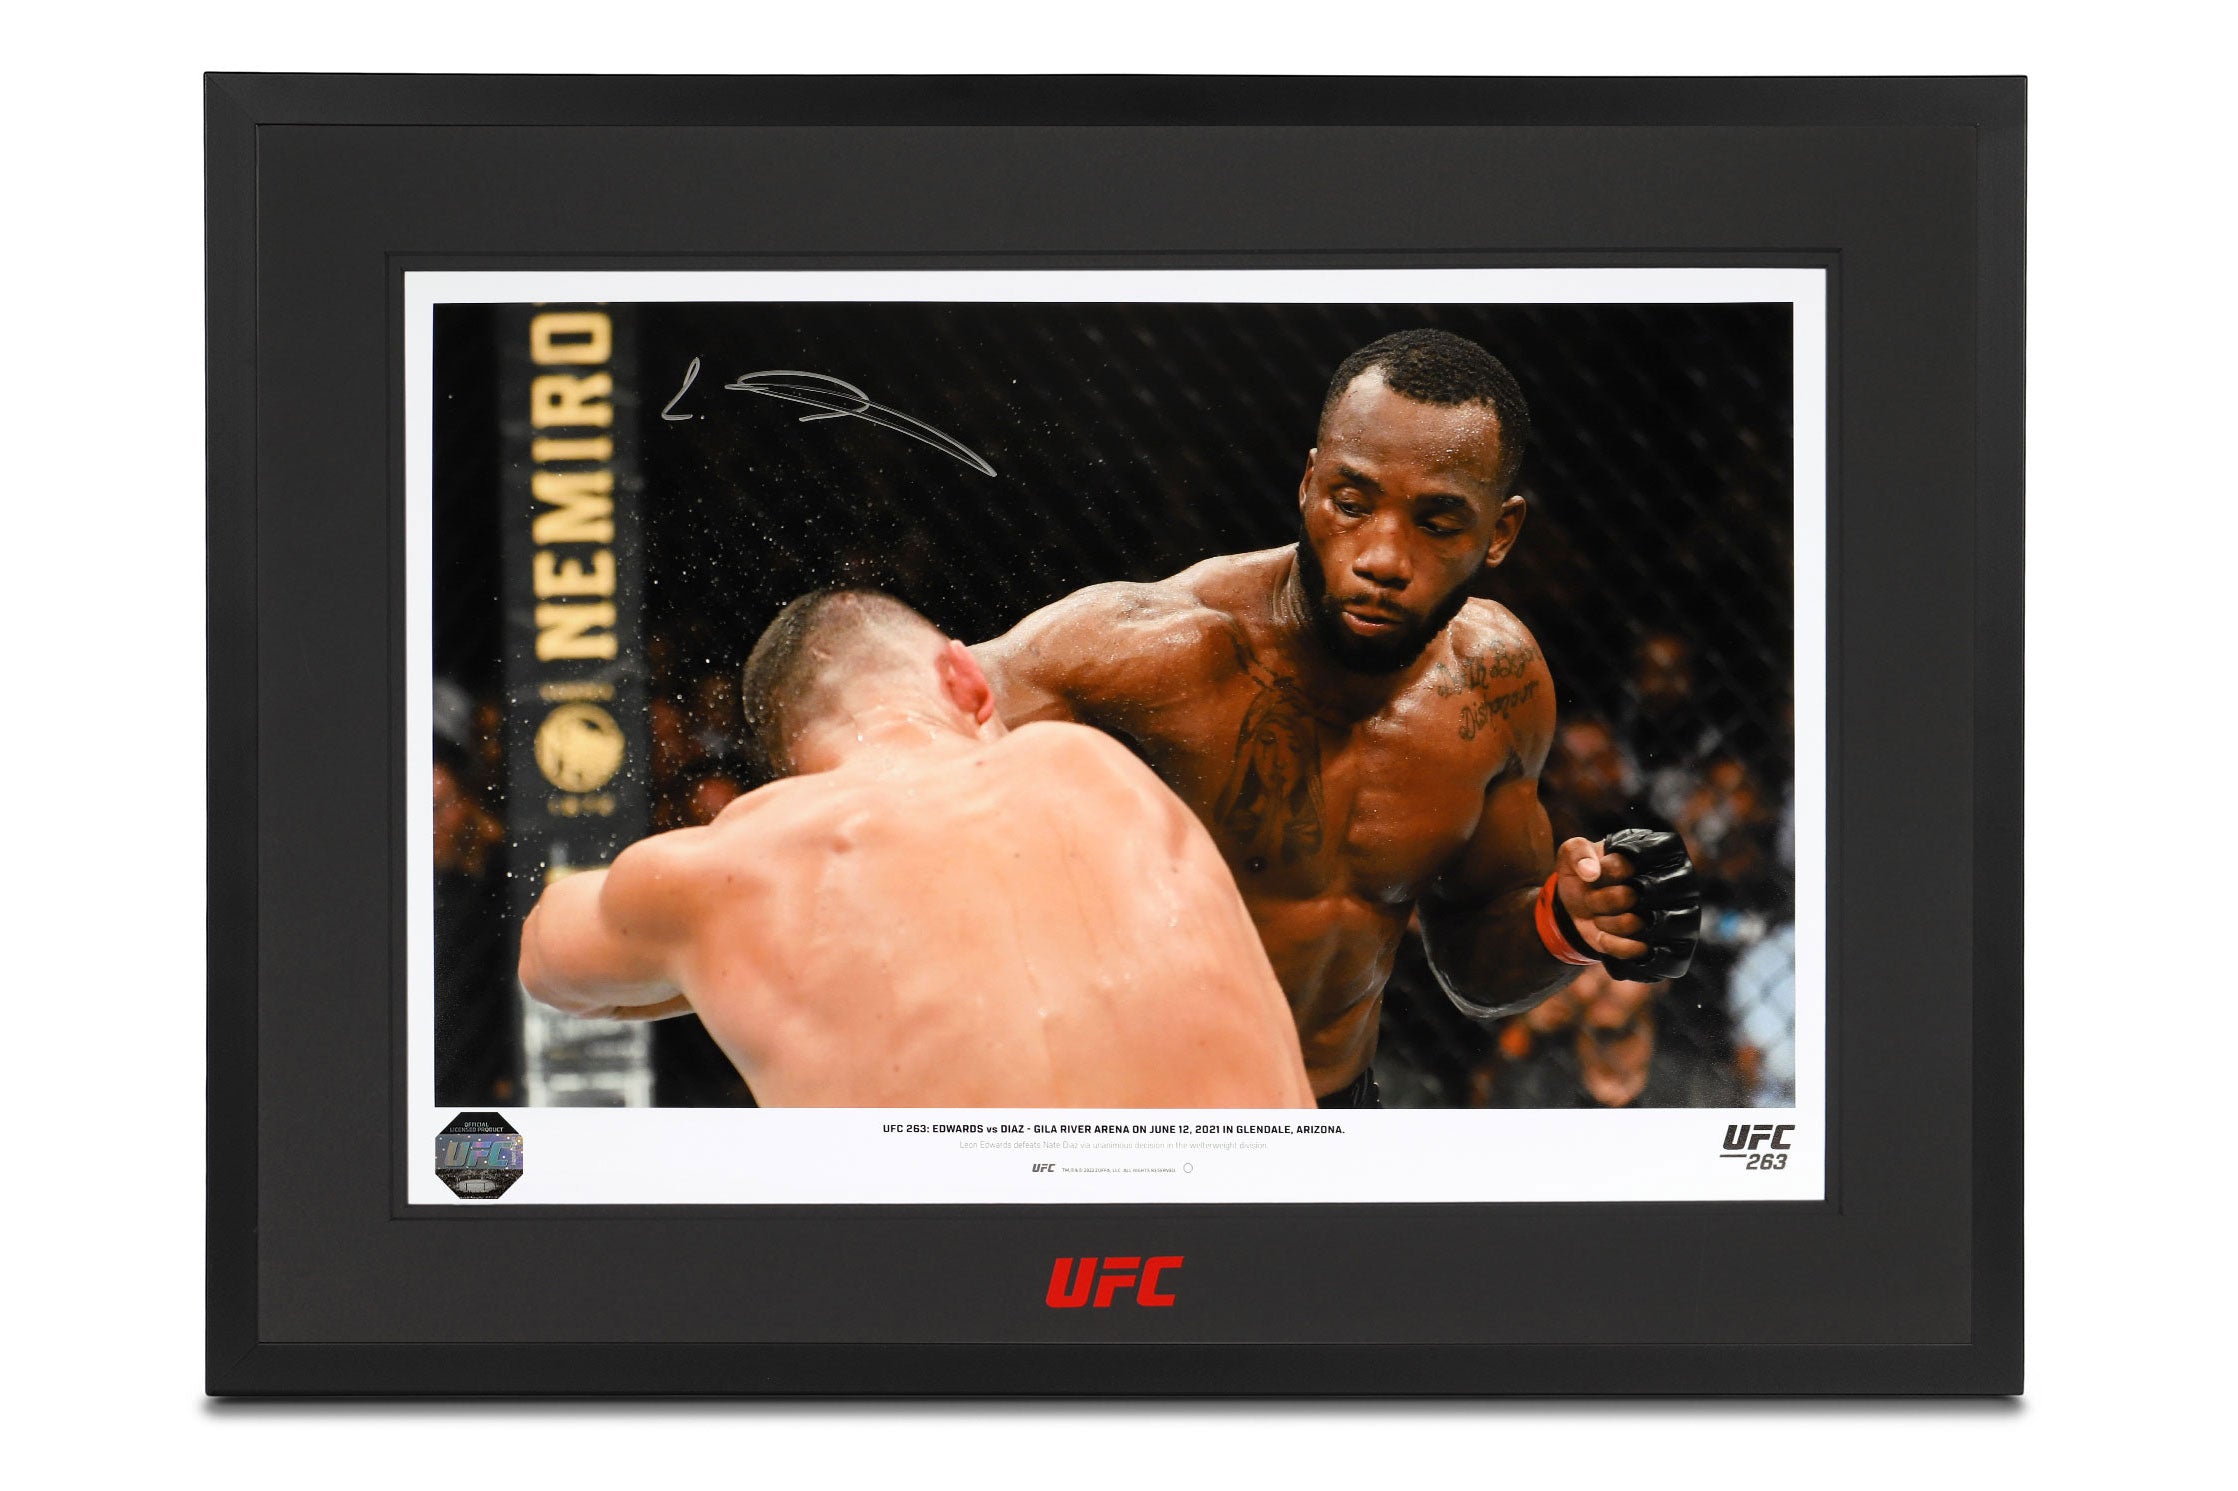 Leon Edwards Framed Signed Photo - UFC 263